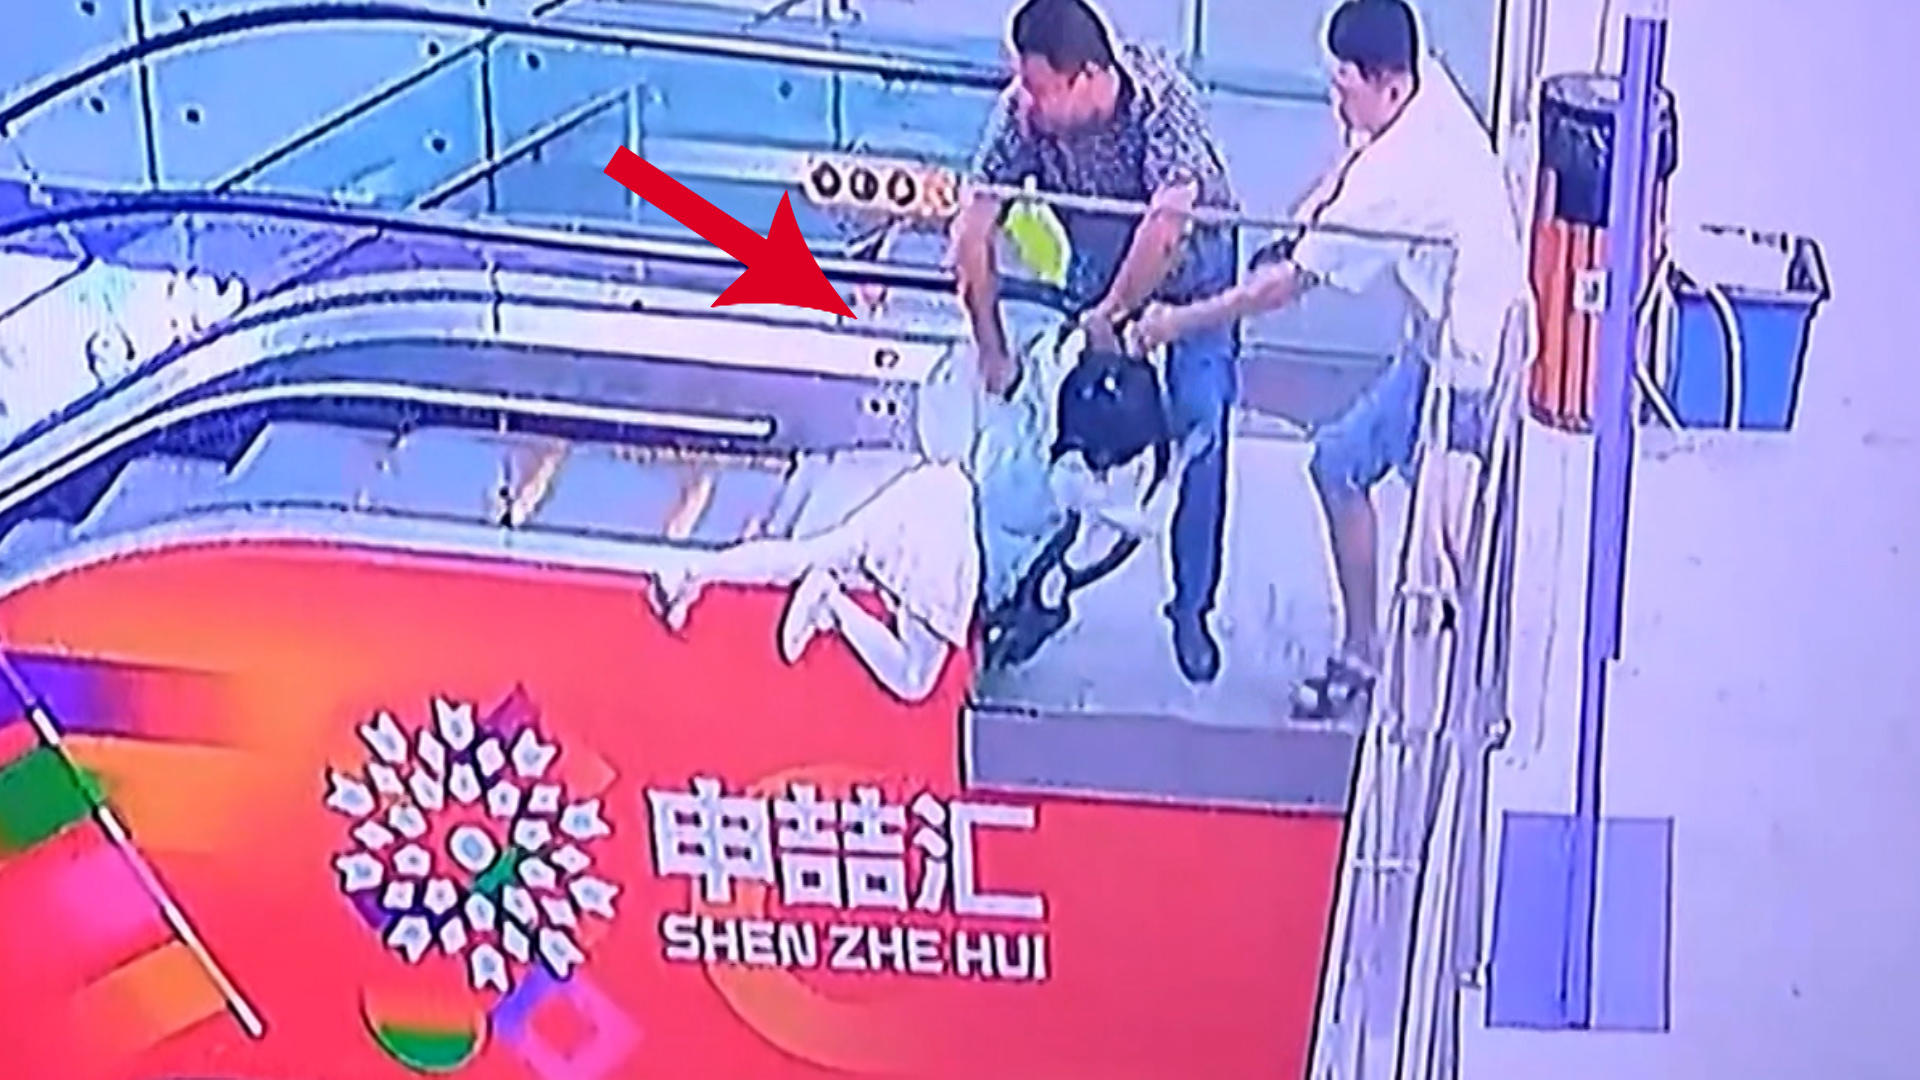 Mädchen hängt an Rolltreppe - Mann eilt ihr zu Hilfe Schreck-Sekunde im Einkaufszentrum